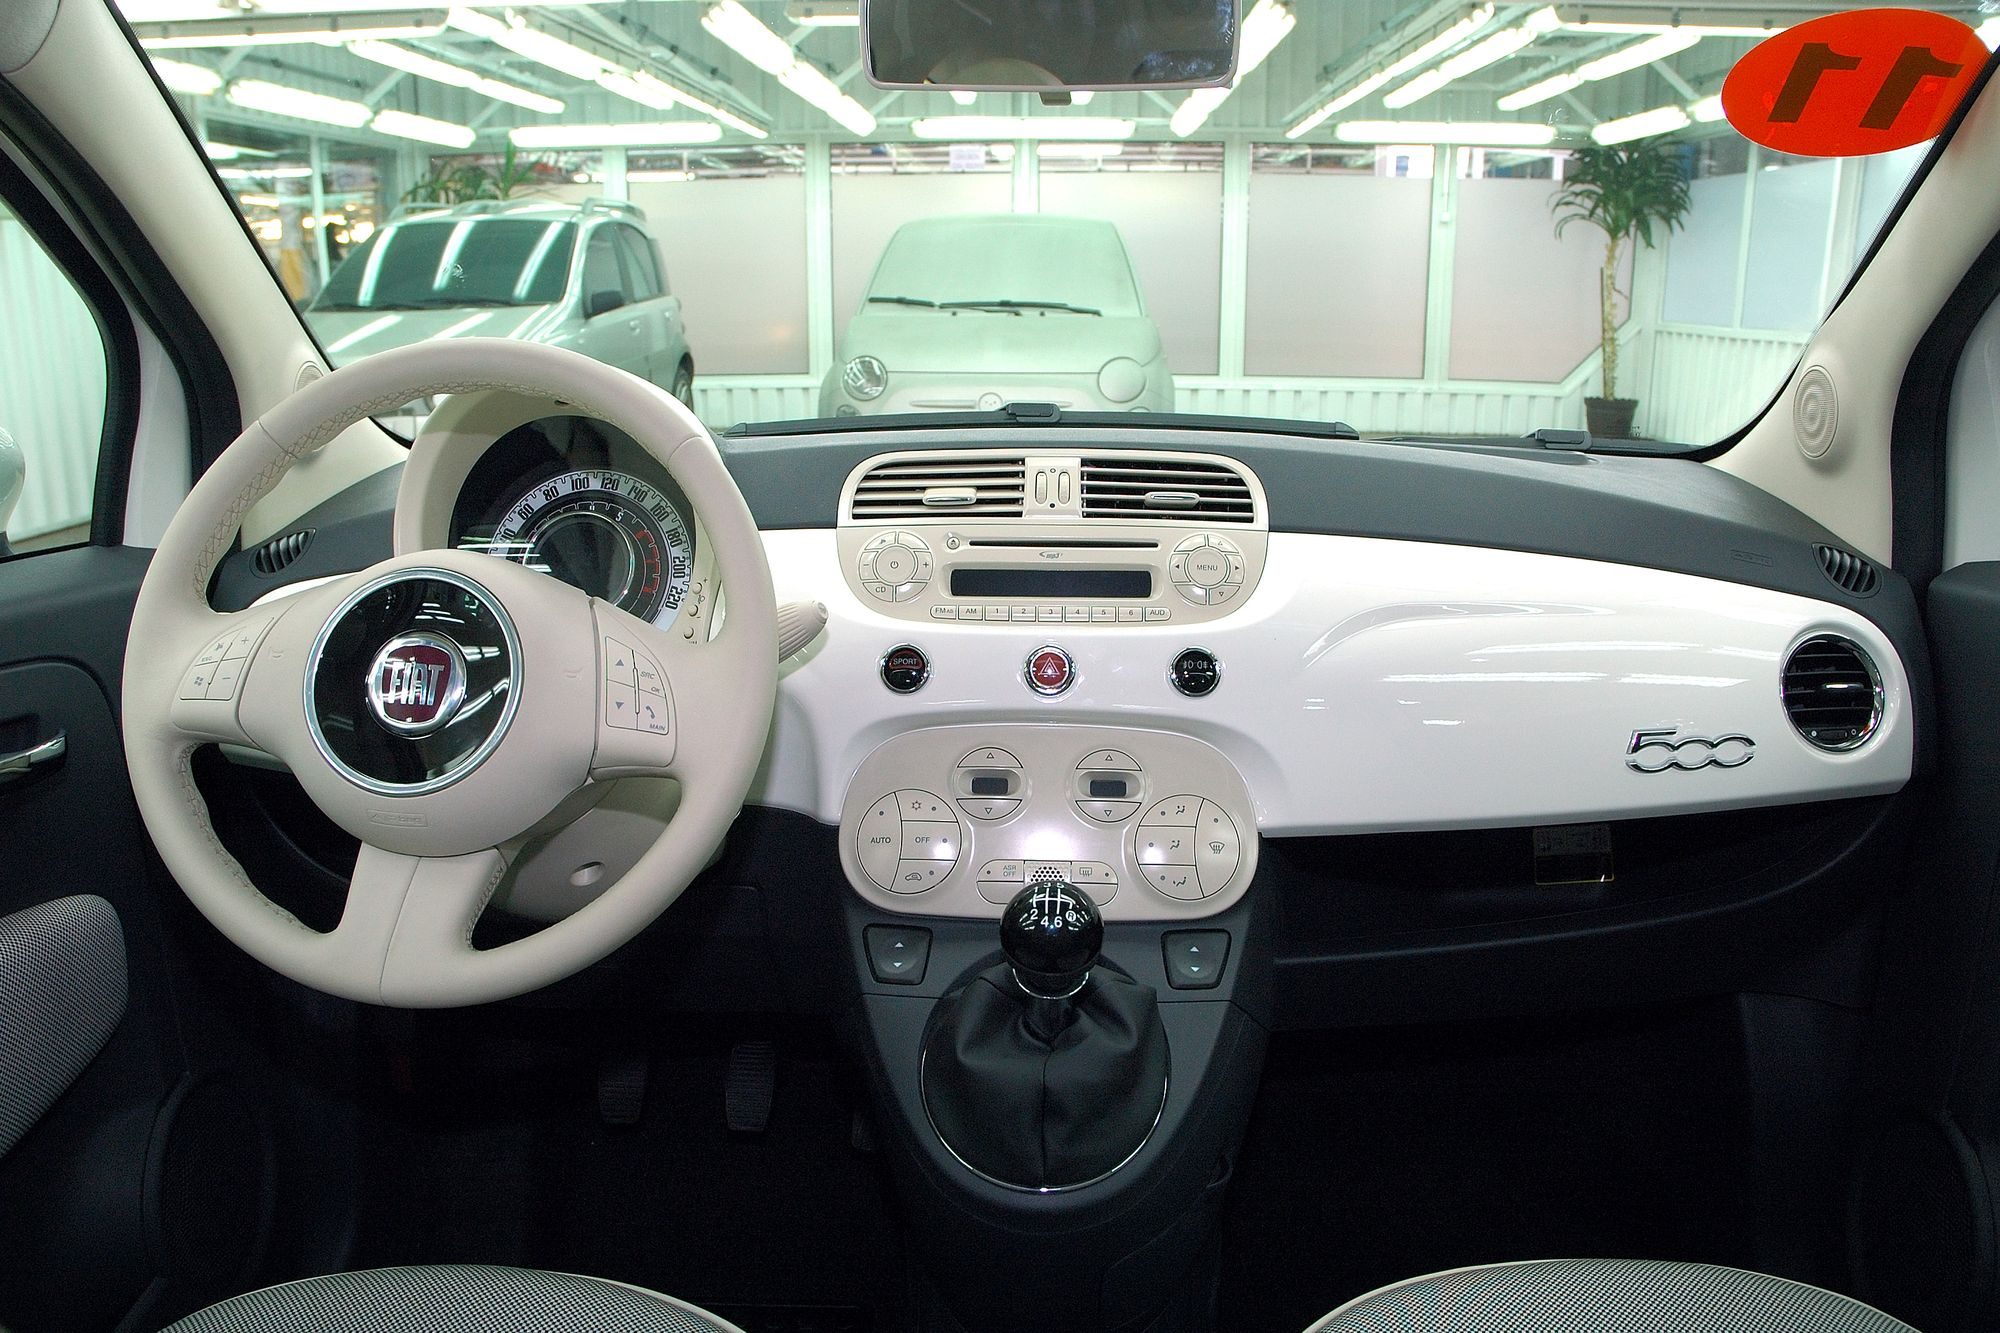 Rok 2007: Fiat 500, tzw. model wzorcowy